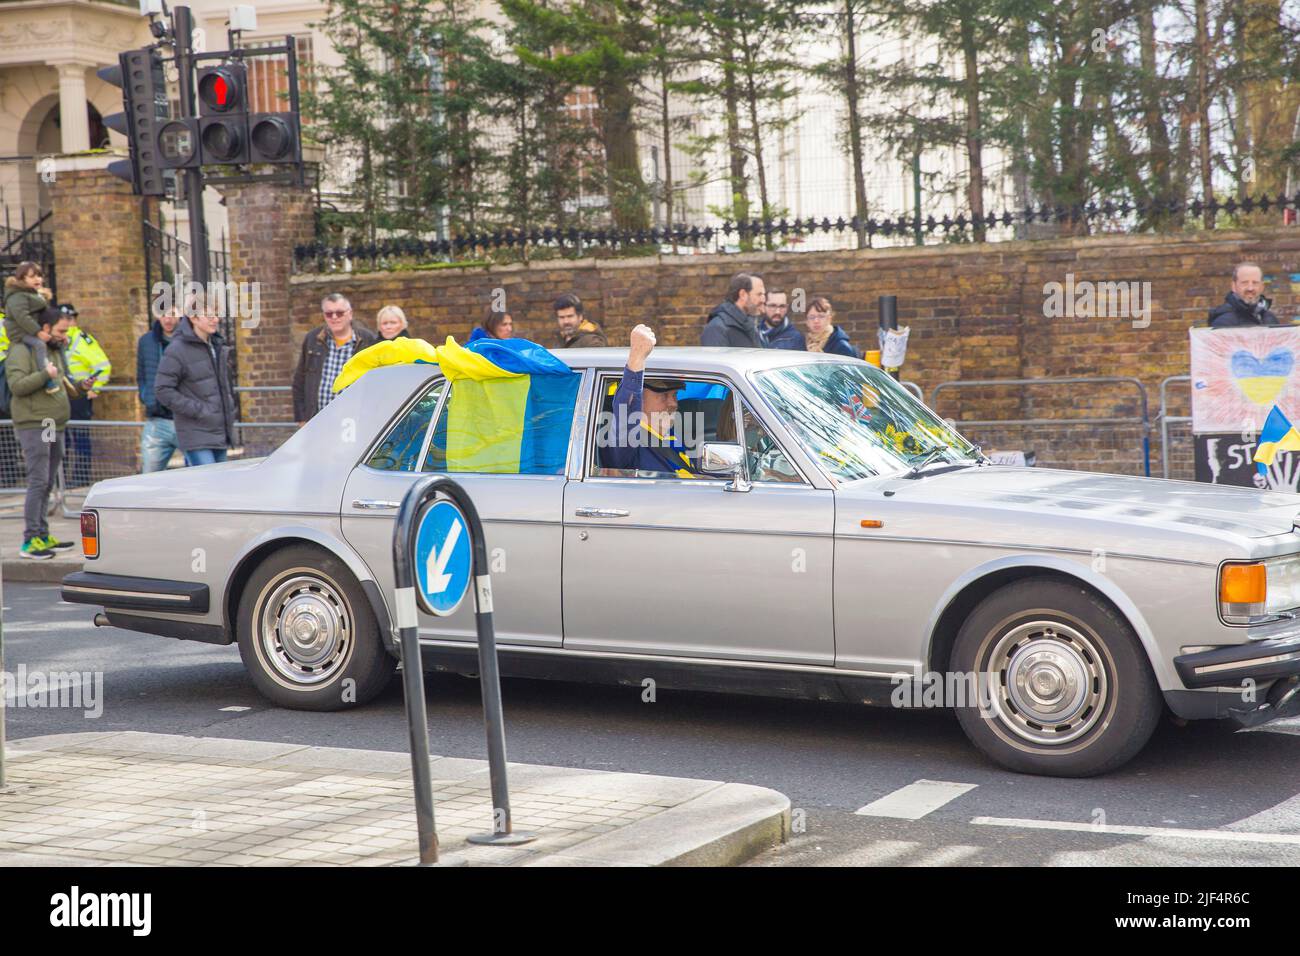 Un automobiliste affichant des drapeaux ukrainiens sur la voiture passe devant l'ambassade de Russie à Londres. Banque D'Images